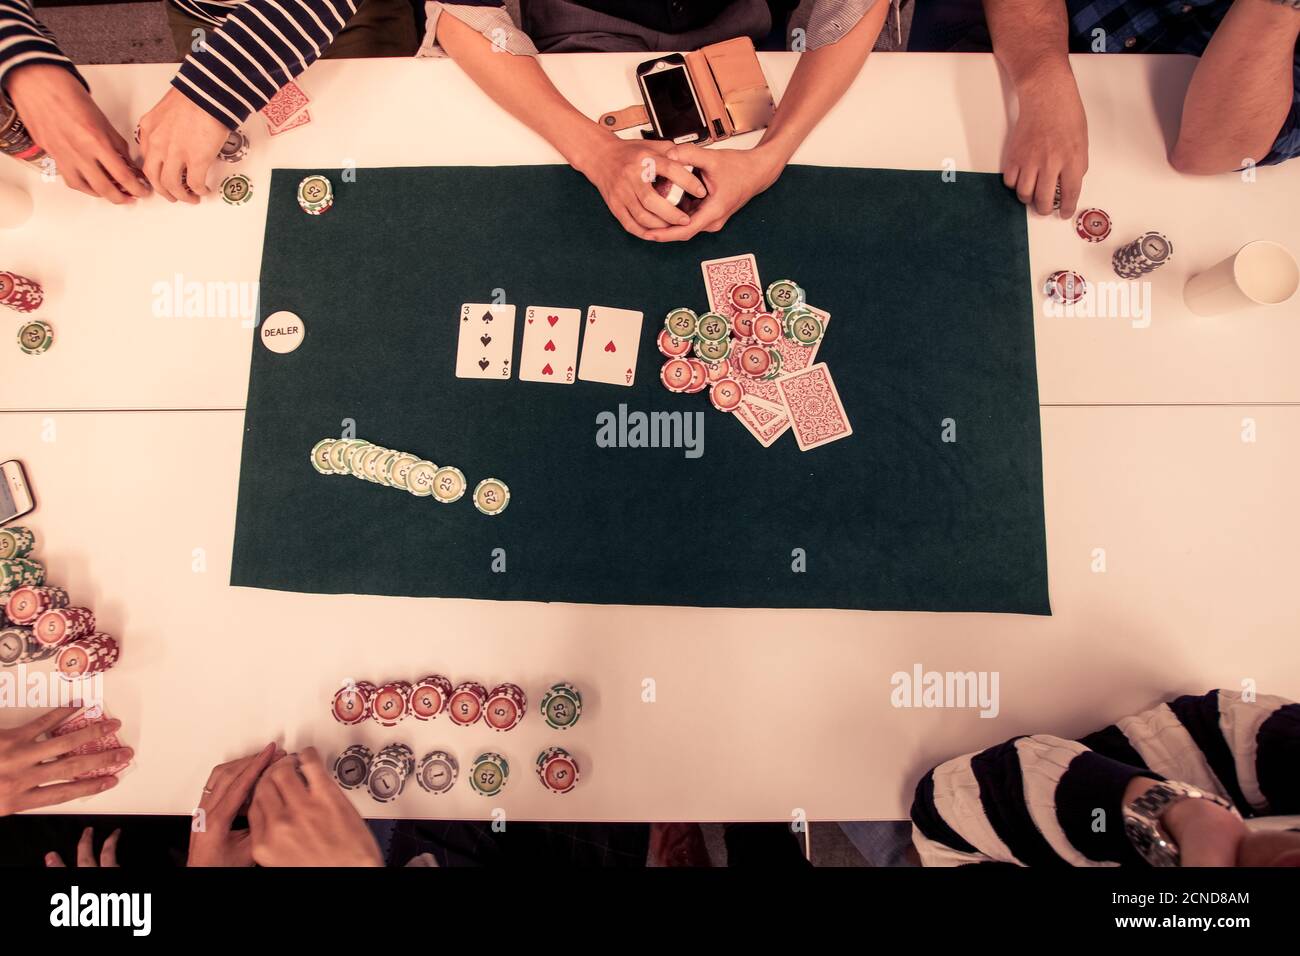 Imagen de Texas Holdem (poker) Foto de stock